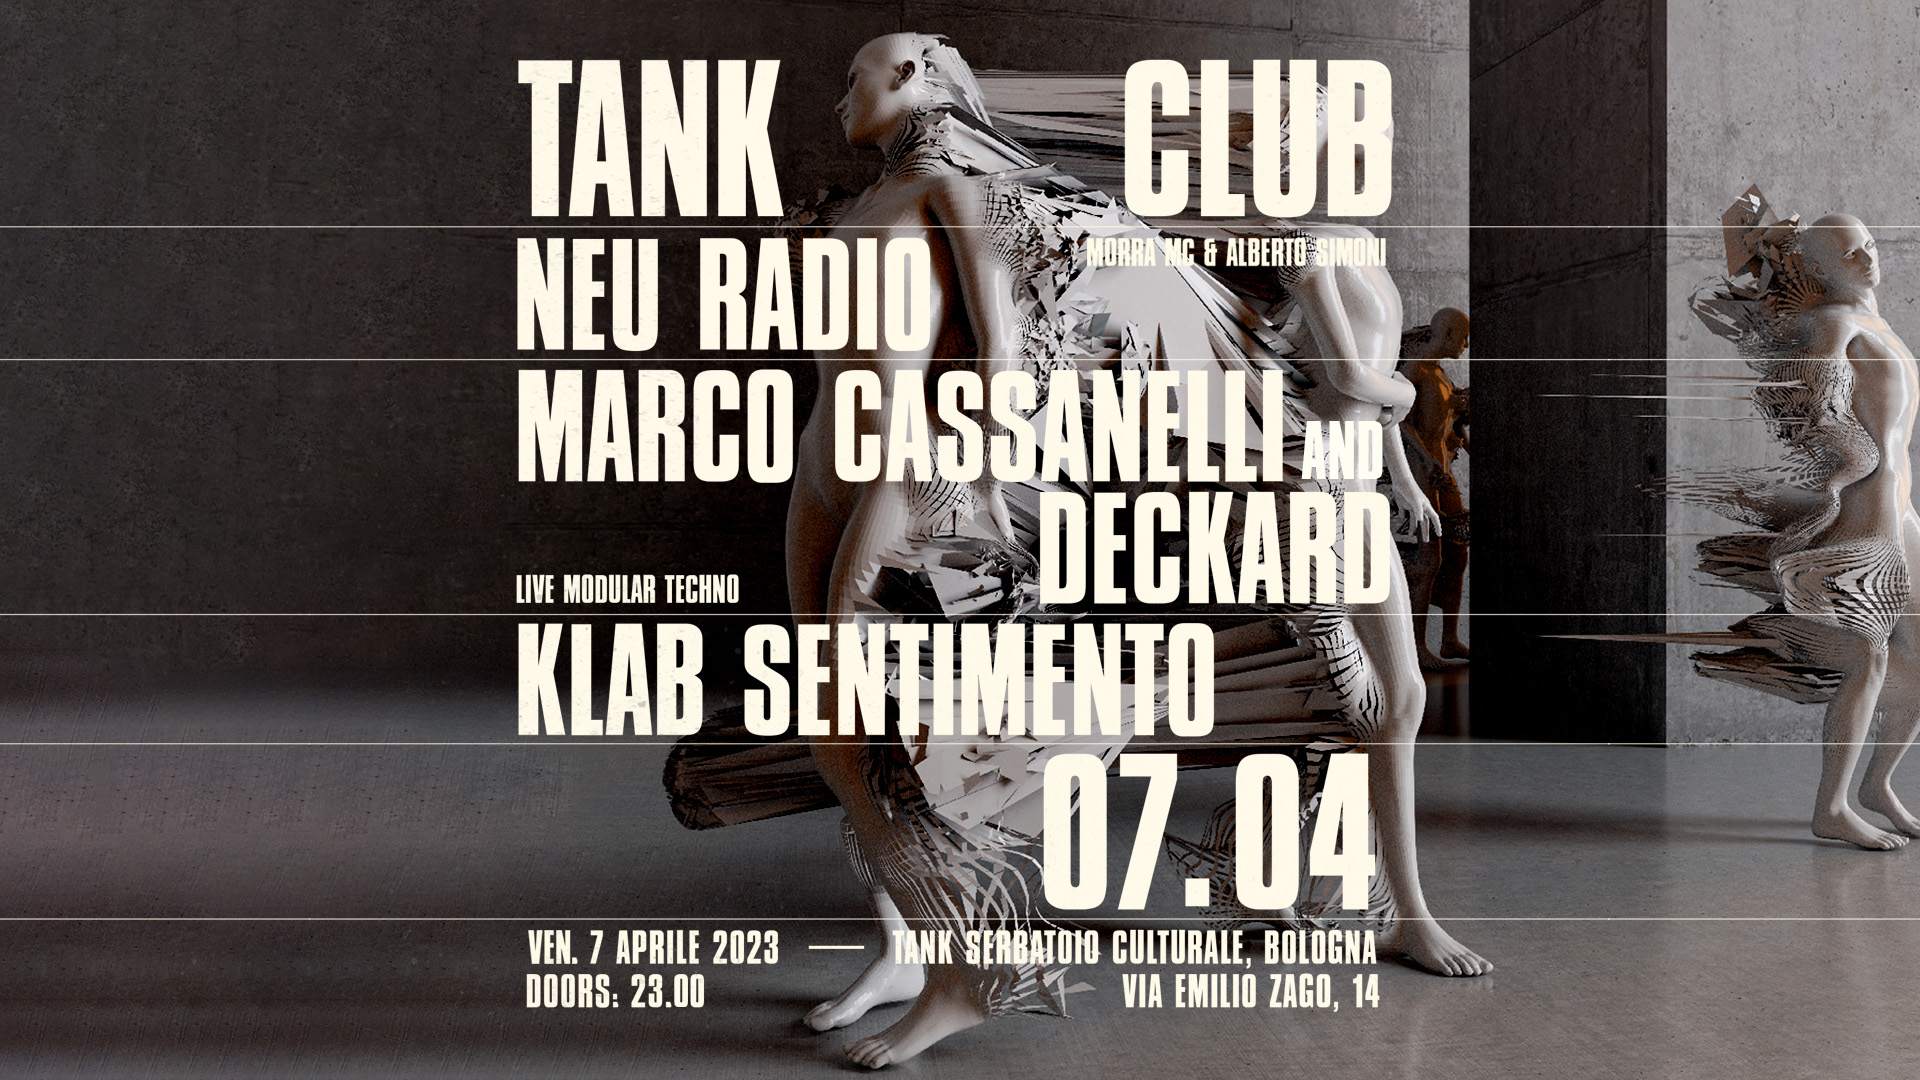 Marco Cassanelli, Deckard & Neu Radio - Página frontal